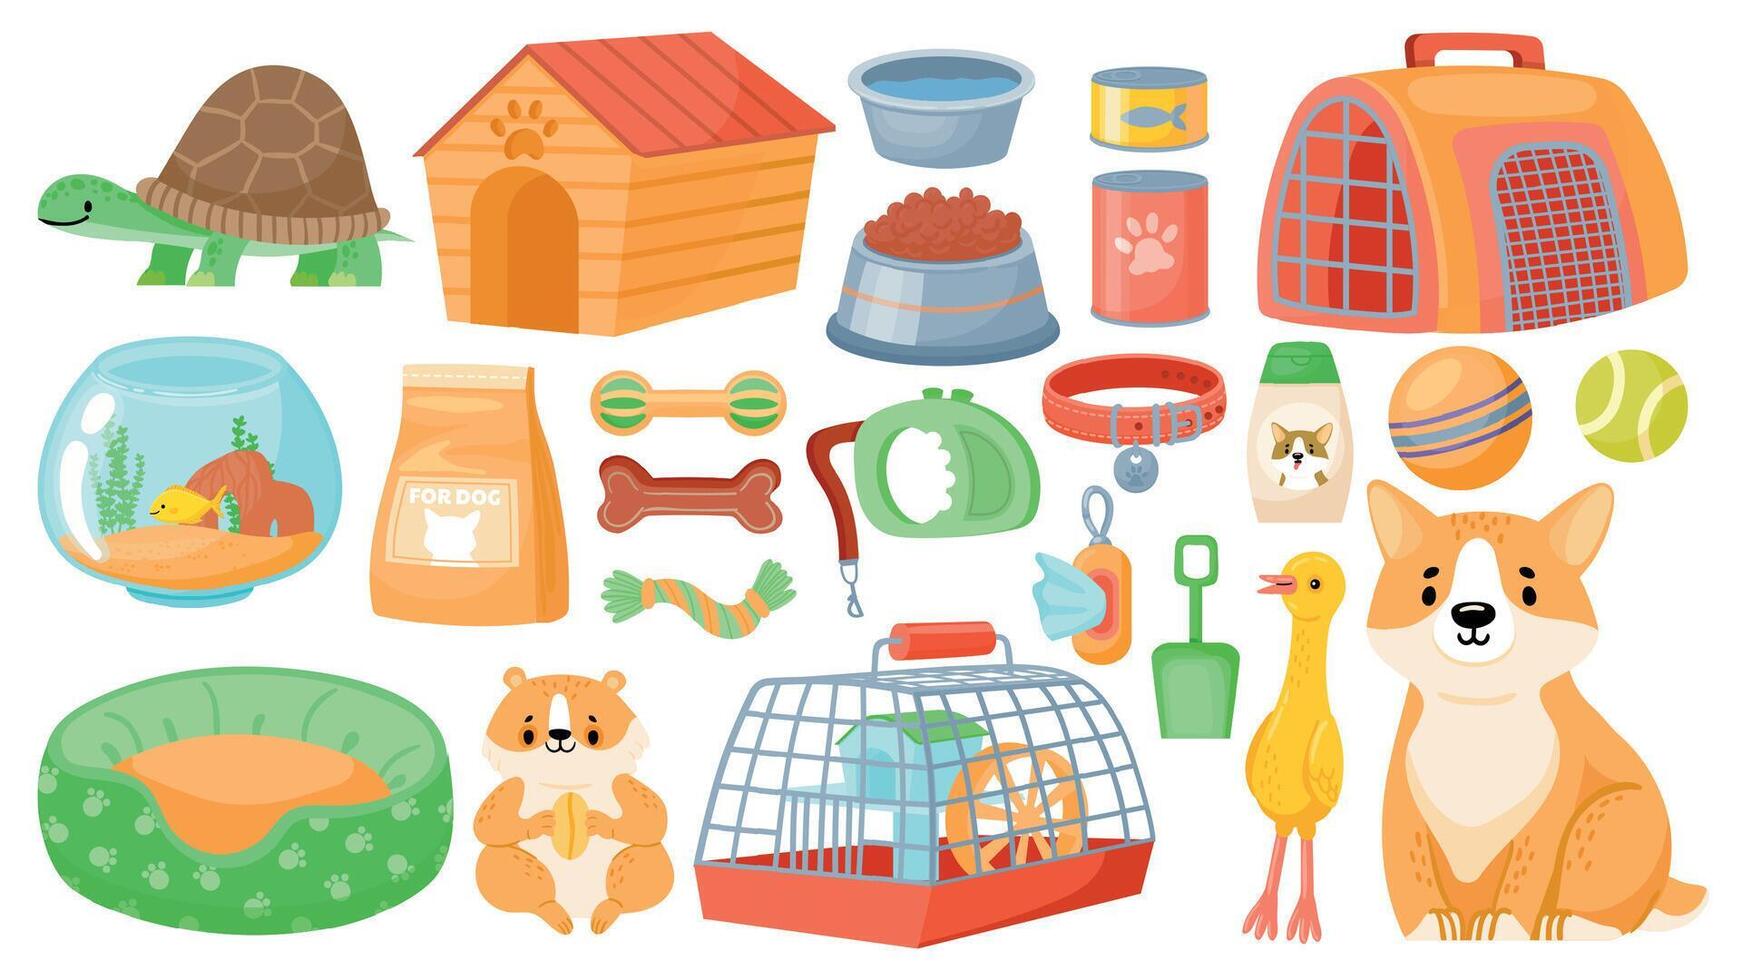 dibujos animados mascota alimento, accesorios, cuidado elementos, juguetes y golosinas animal tienda suministros, cuello, perro aseo, hámster jaula y acuario vector conjunto